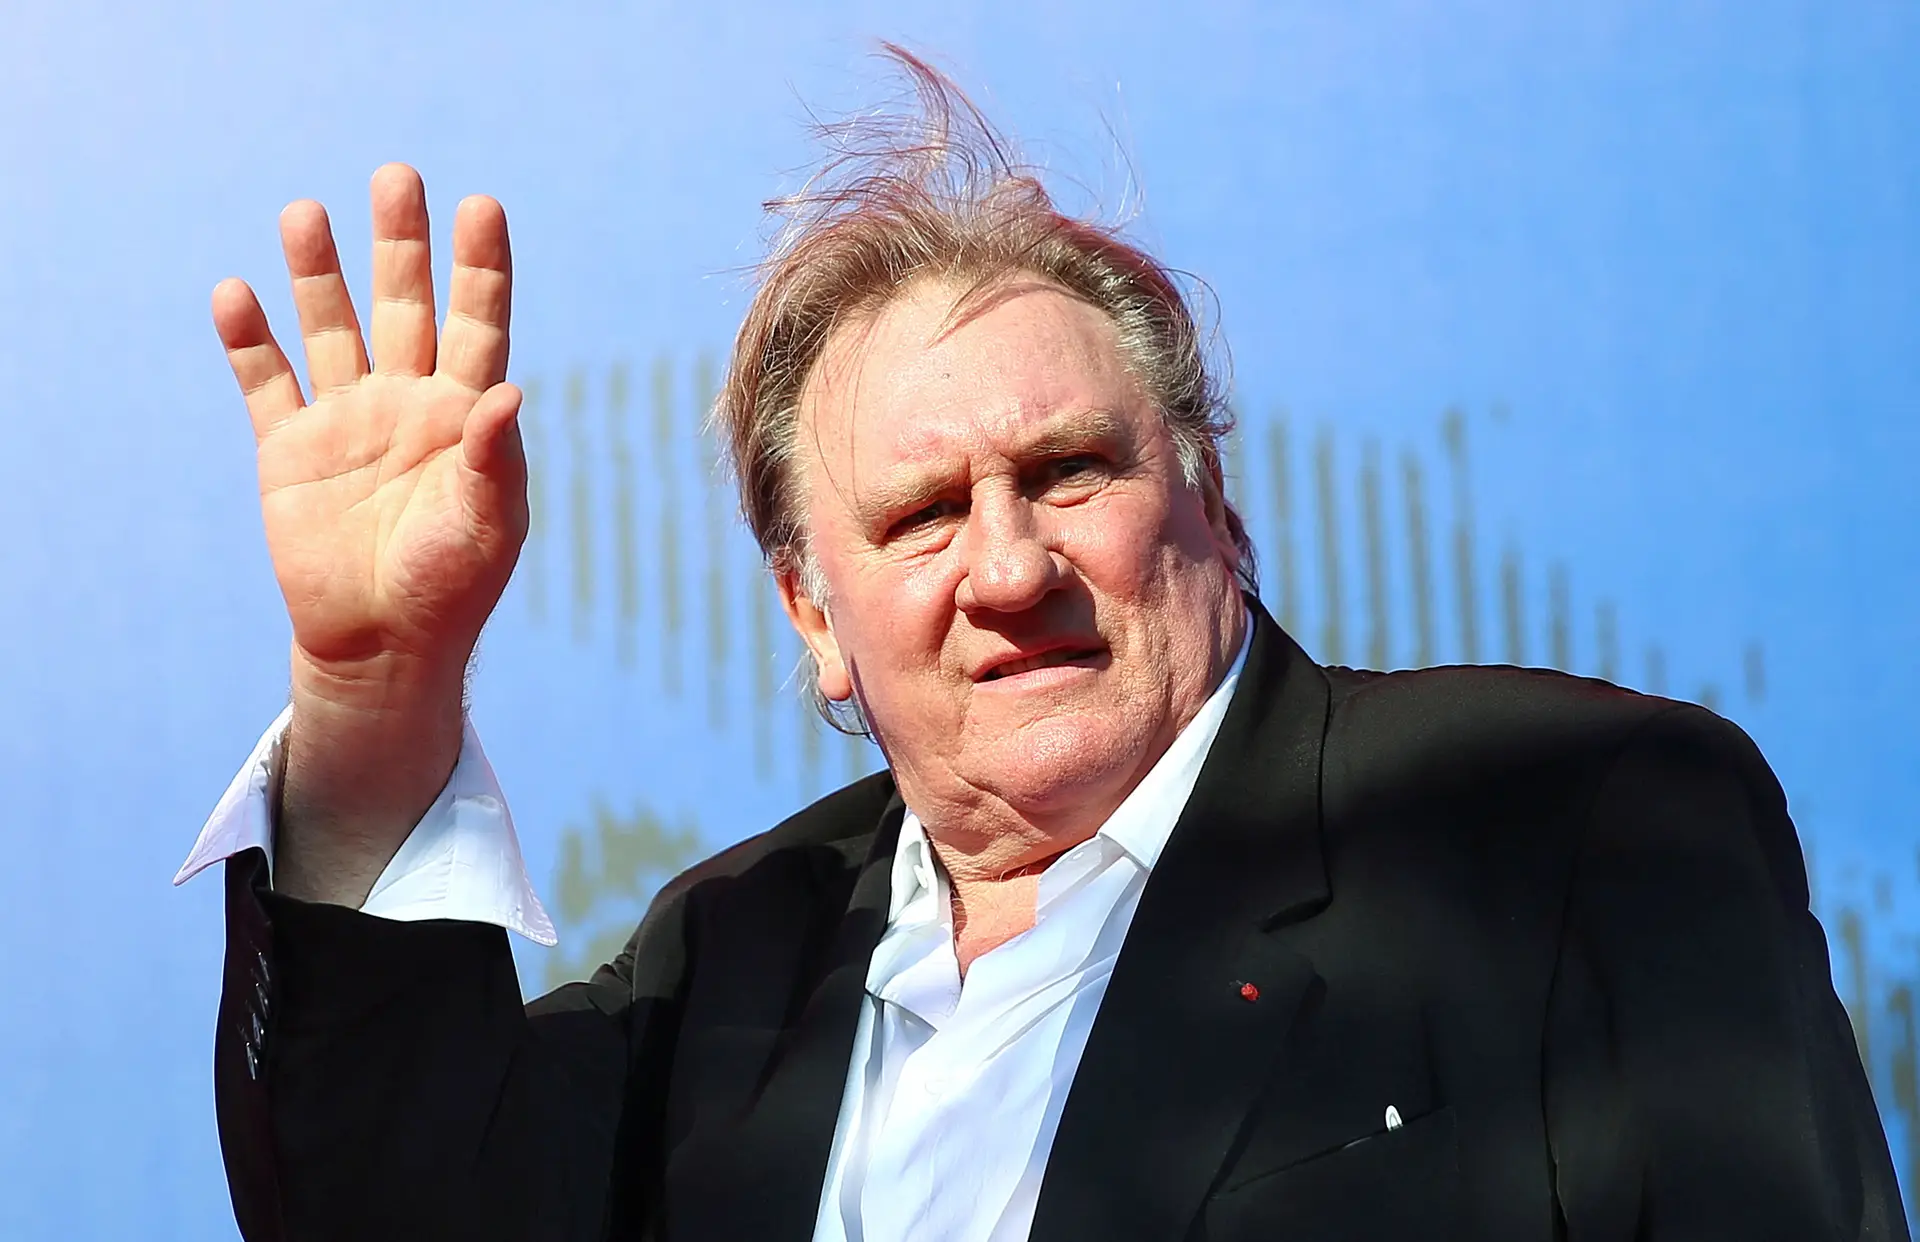 Ator Gérard Depardieu vai ser julgado em outubro por alegadas agressões sexuais